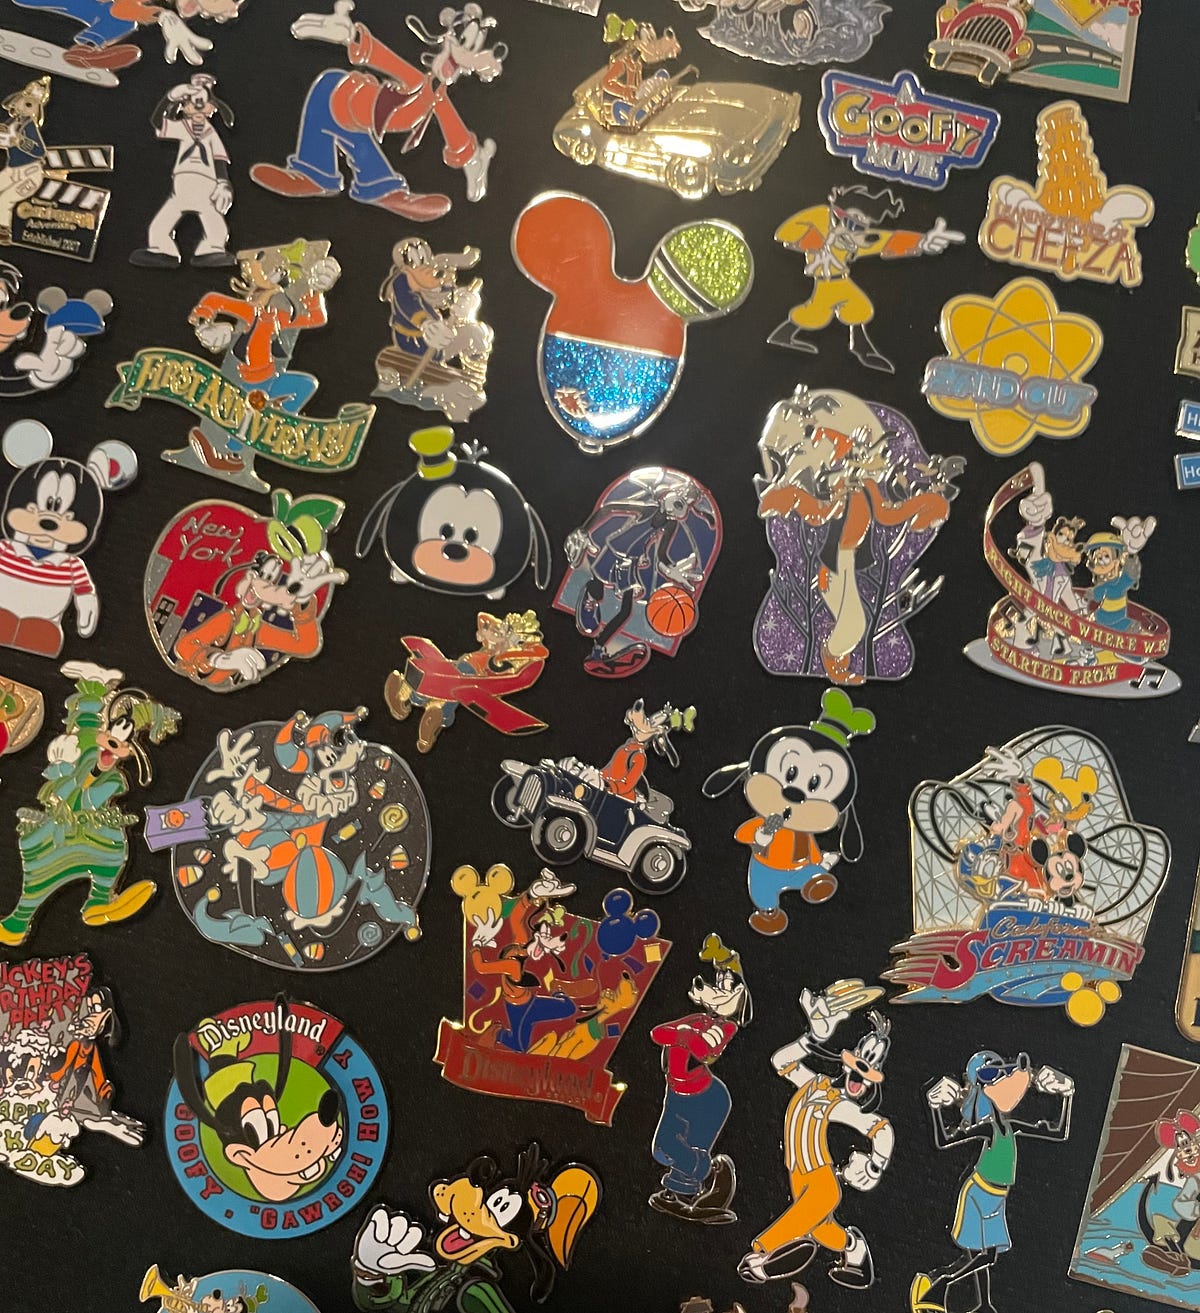 Vintage Disney pins